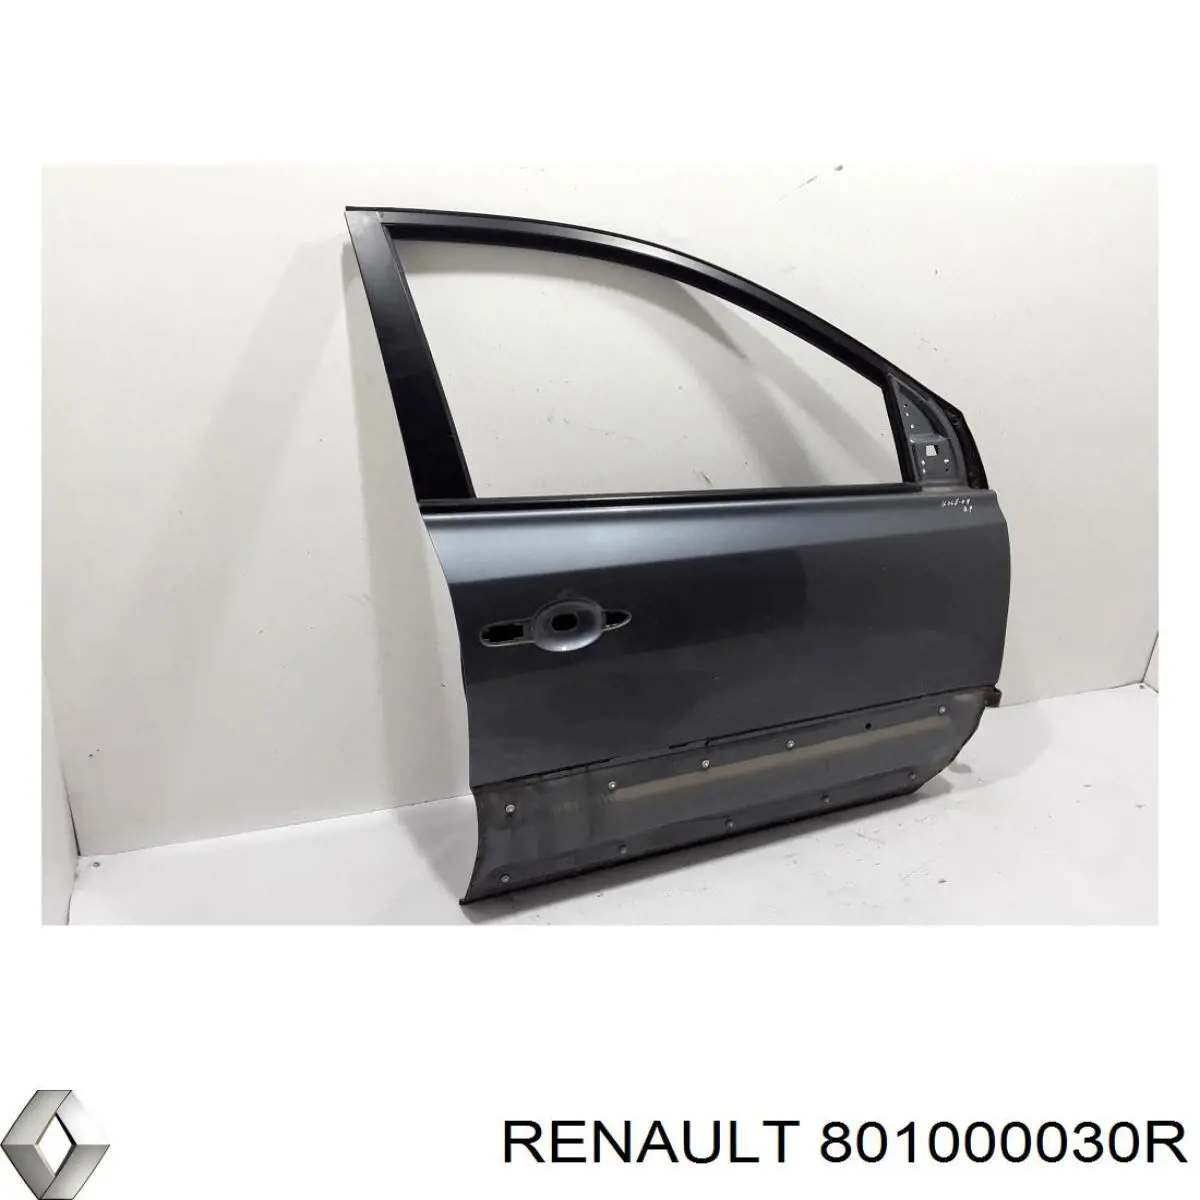 Передняя правая дверь Рено Колеос HY0 (Renault Koleos)